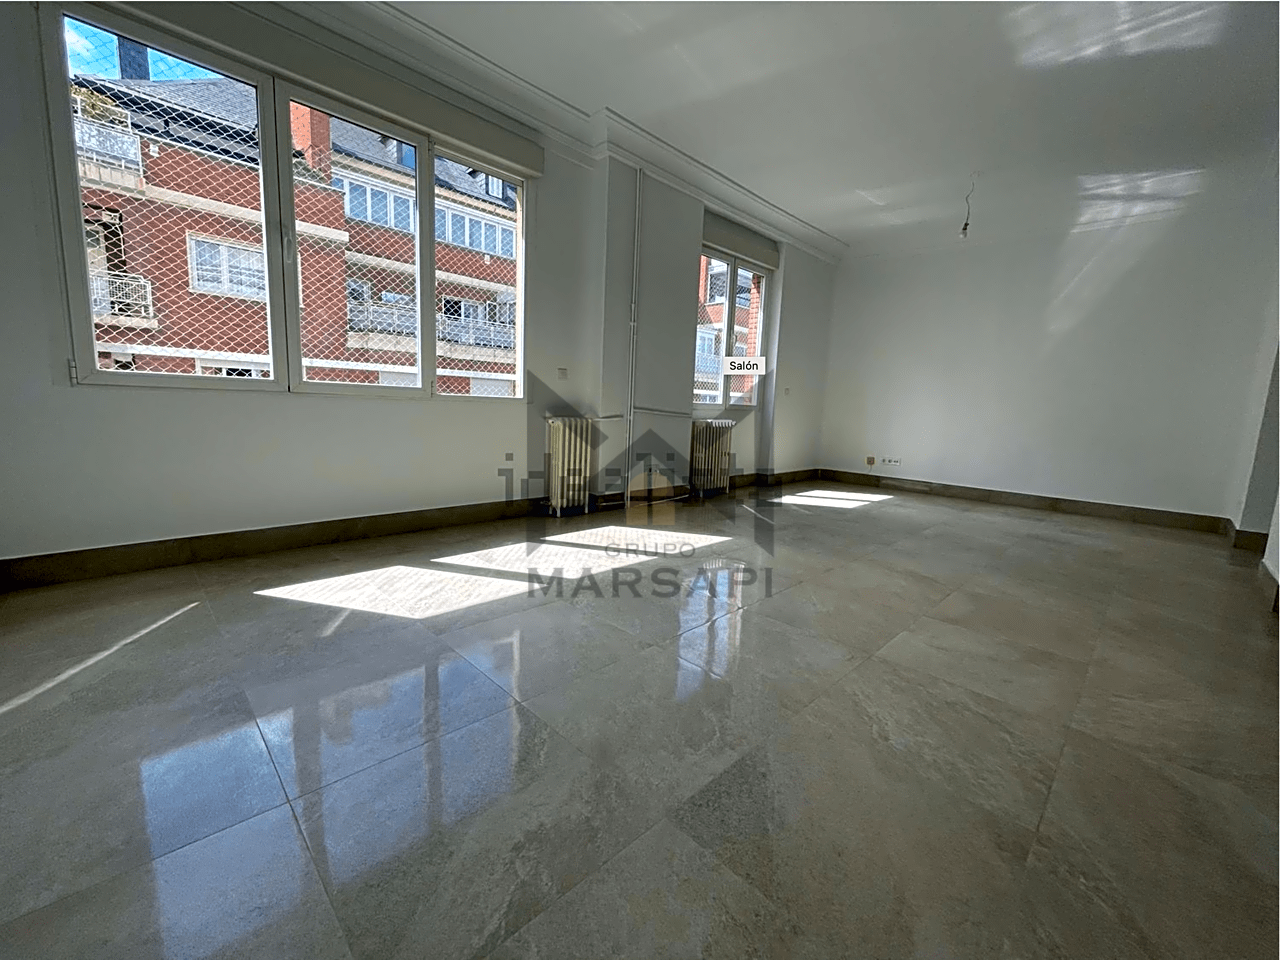 pisos en madrid · calle-de-hermosilla-28001 €